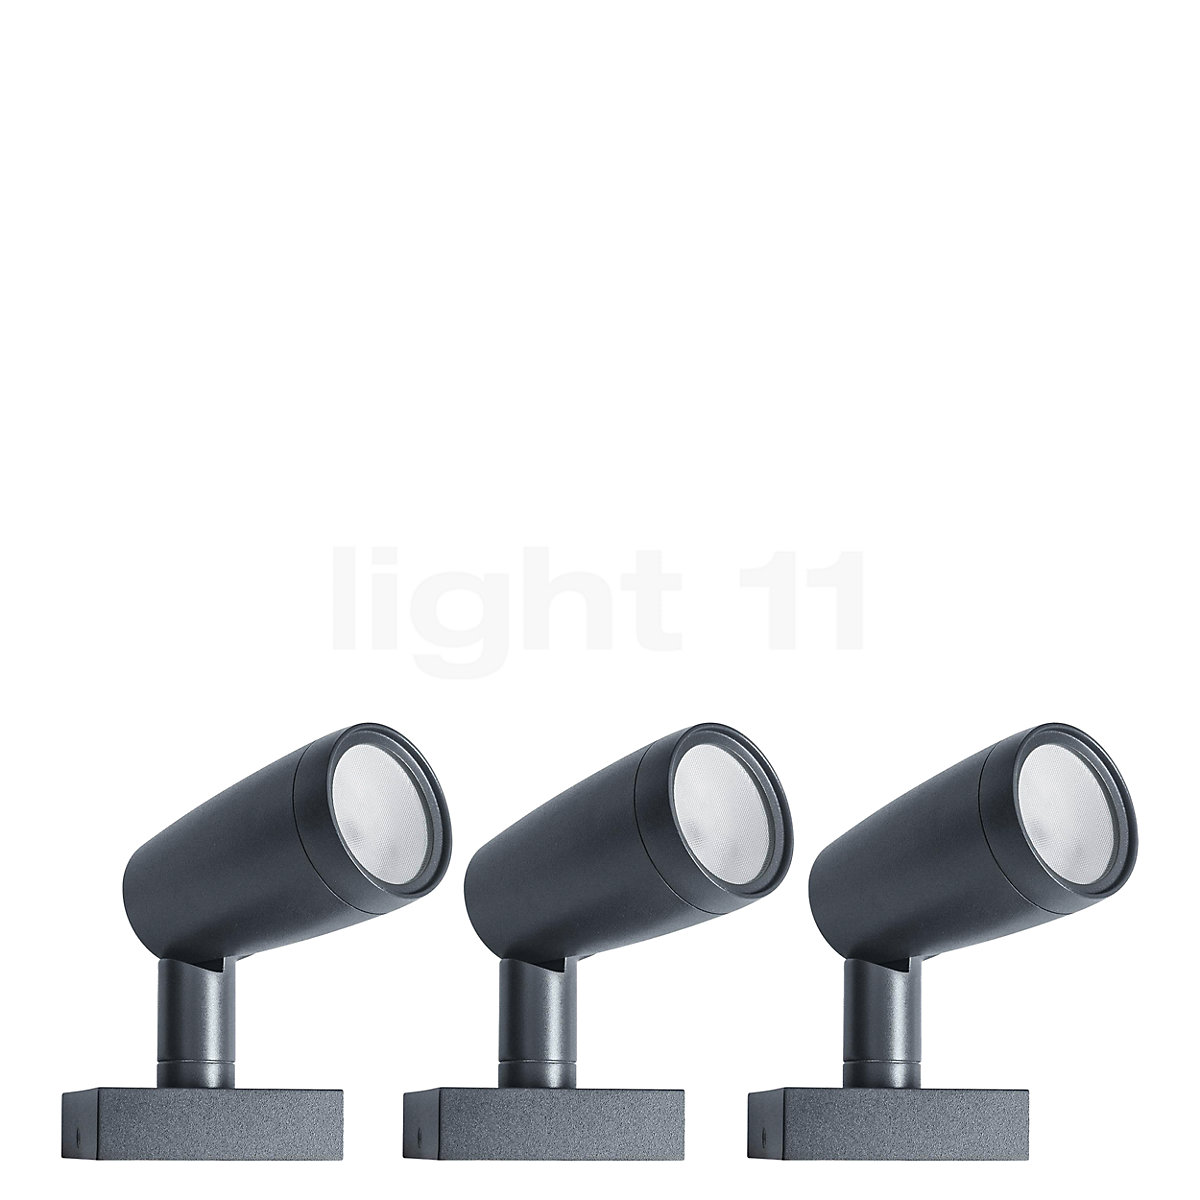 Mini projecteur LED étanche à intensité variable fixe,Low Prices